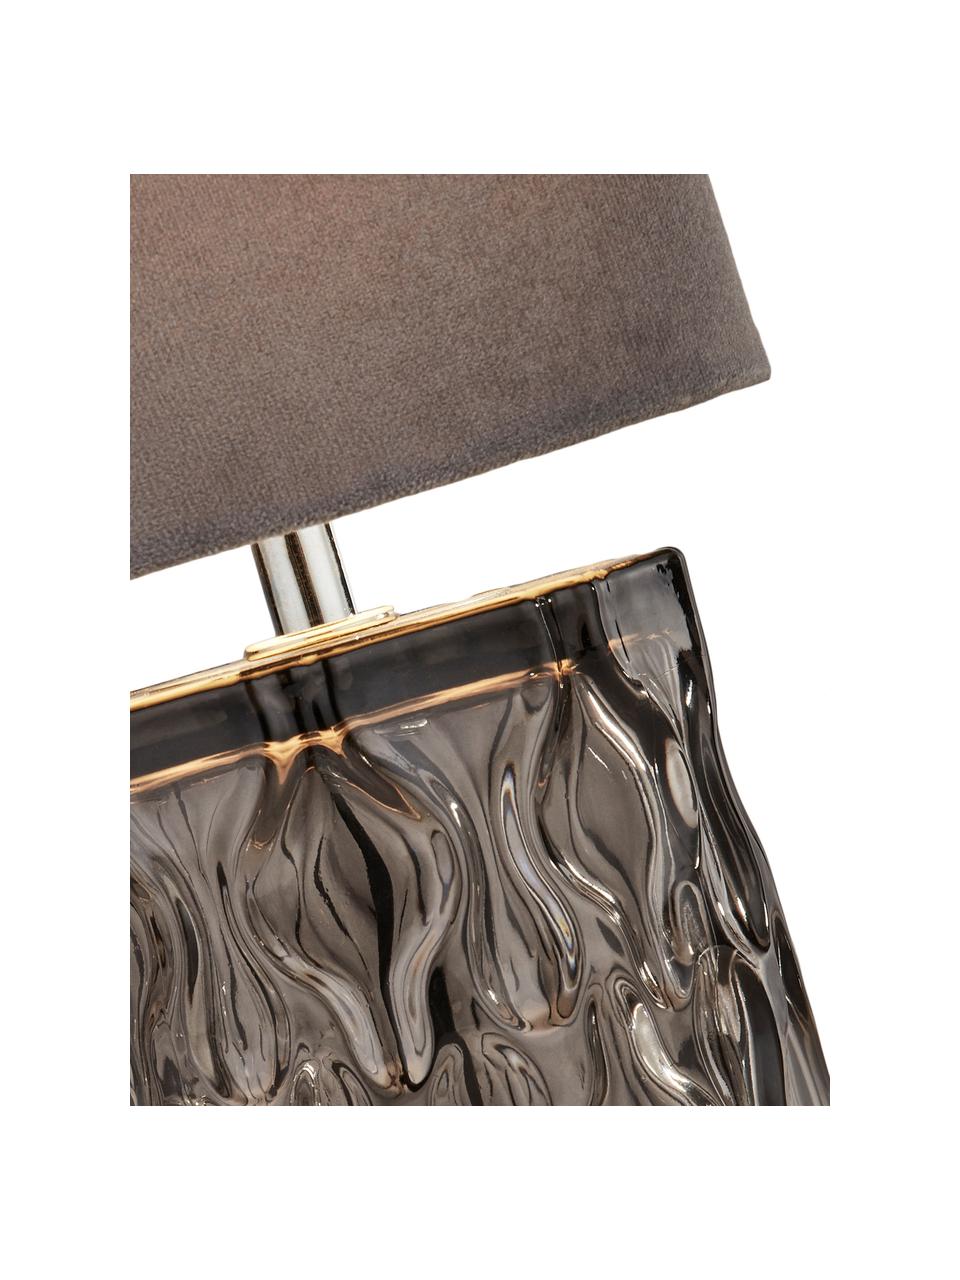 Kleine fluwelen tafellamp Tina in grijs, Lampenkap: fluweel, Lampvoet: glas, Decoratie: gegalvaniseerd metaal, Grijs, Ø 15  x H 30 cm